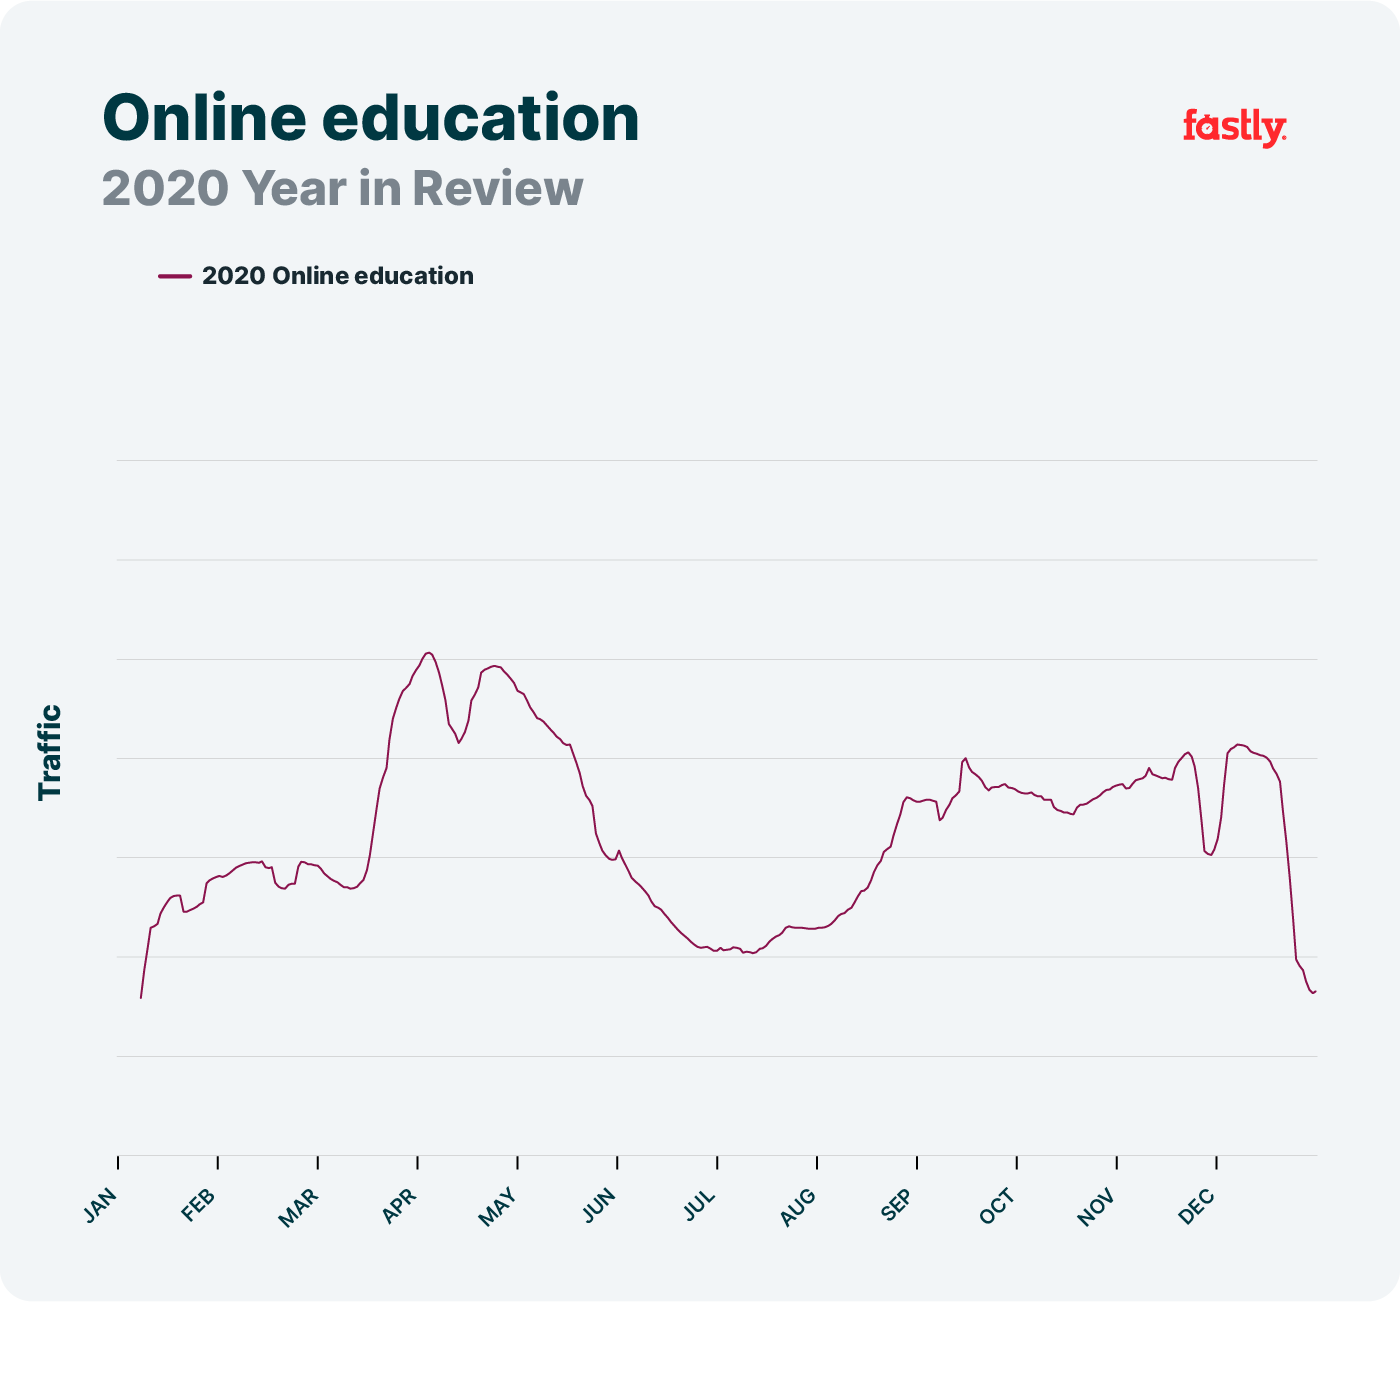 Tendencias de la educación online en la red en 2020